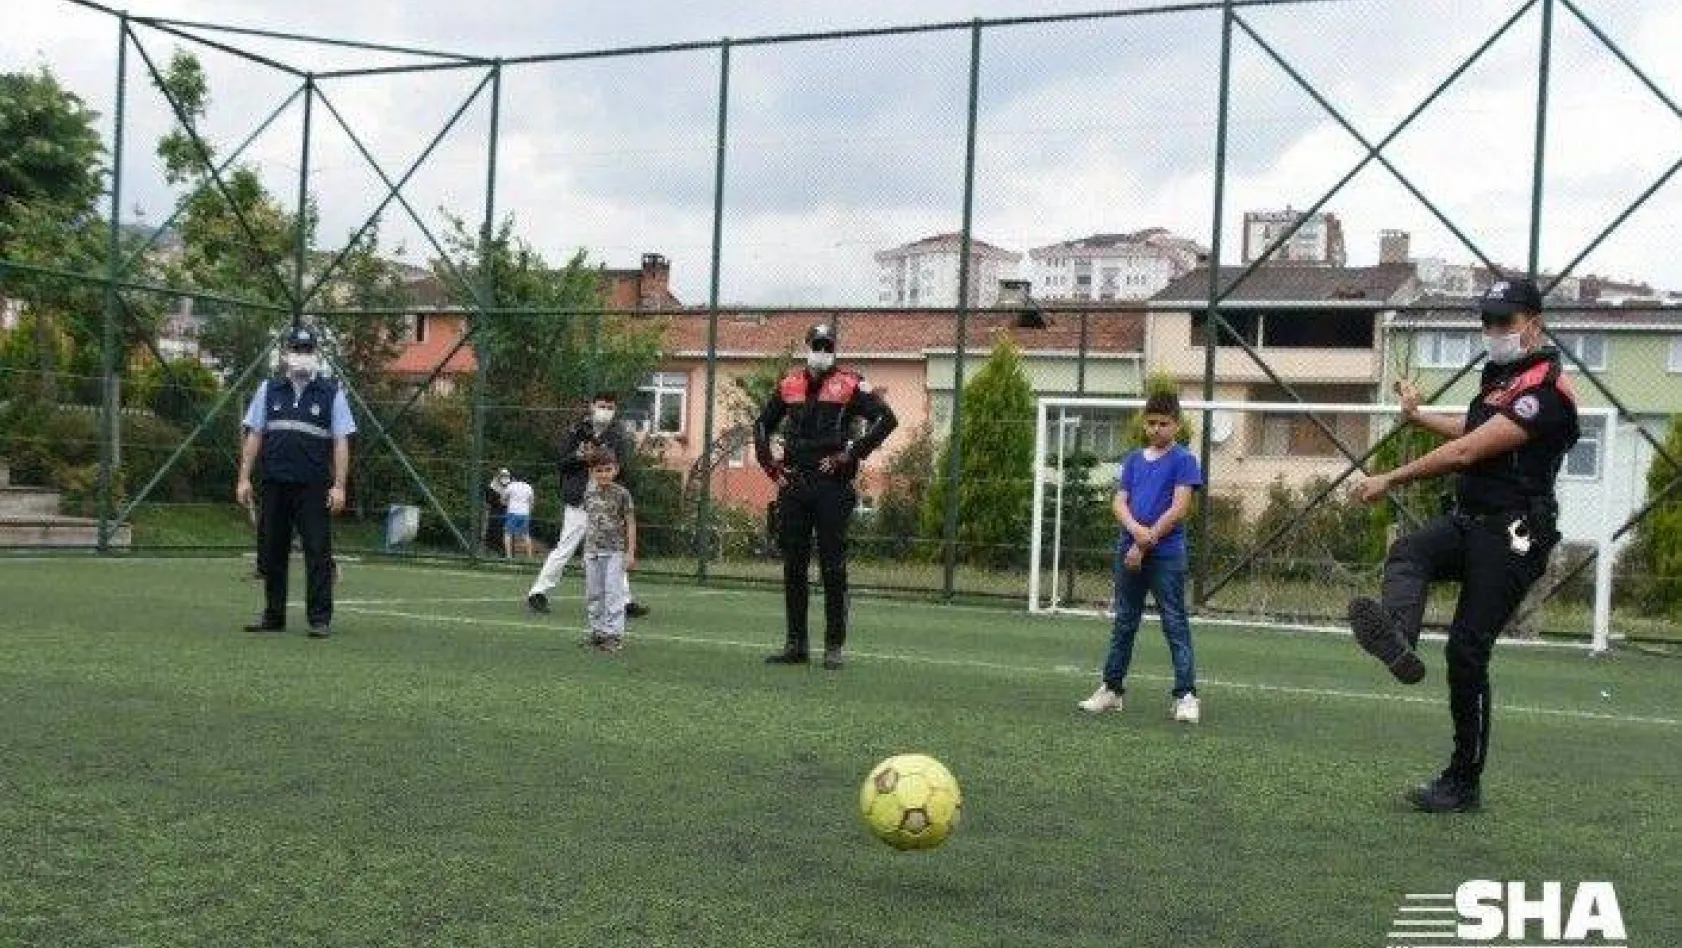 Çocuklar sokağa çıkma izinlerinde polis ve zabıta ekipleriyle futbol oynadılar, ip atladılar